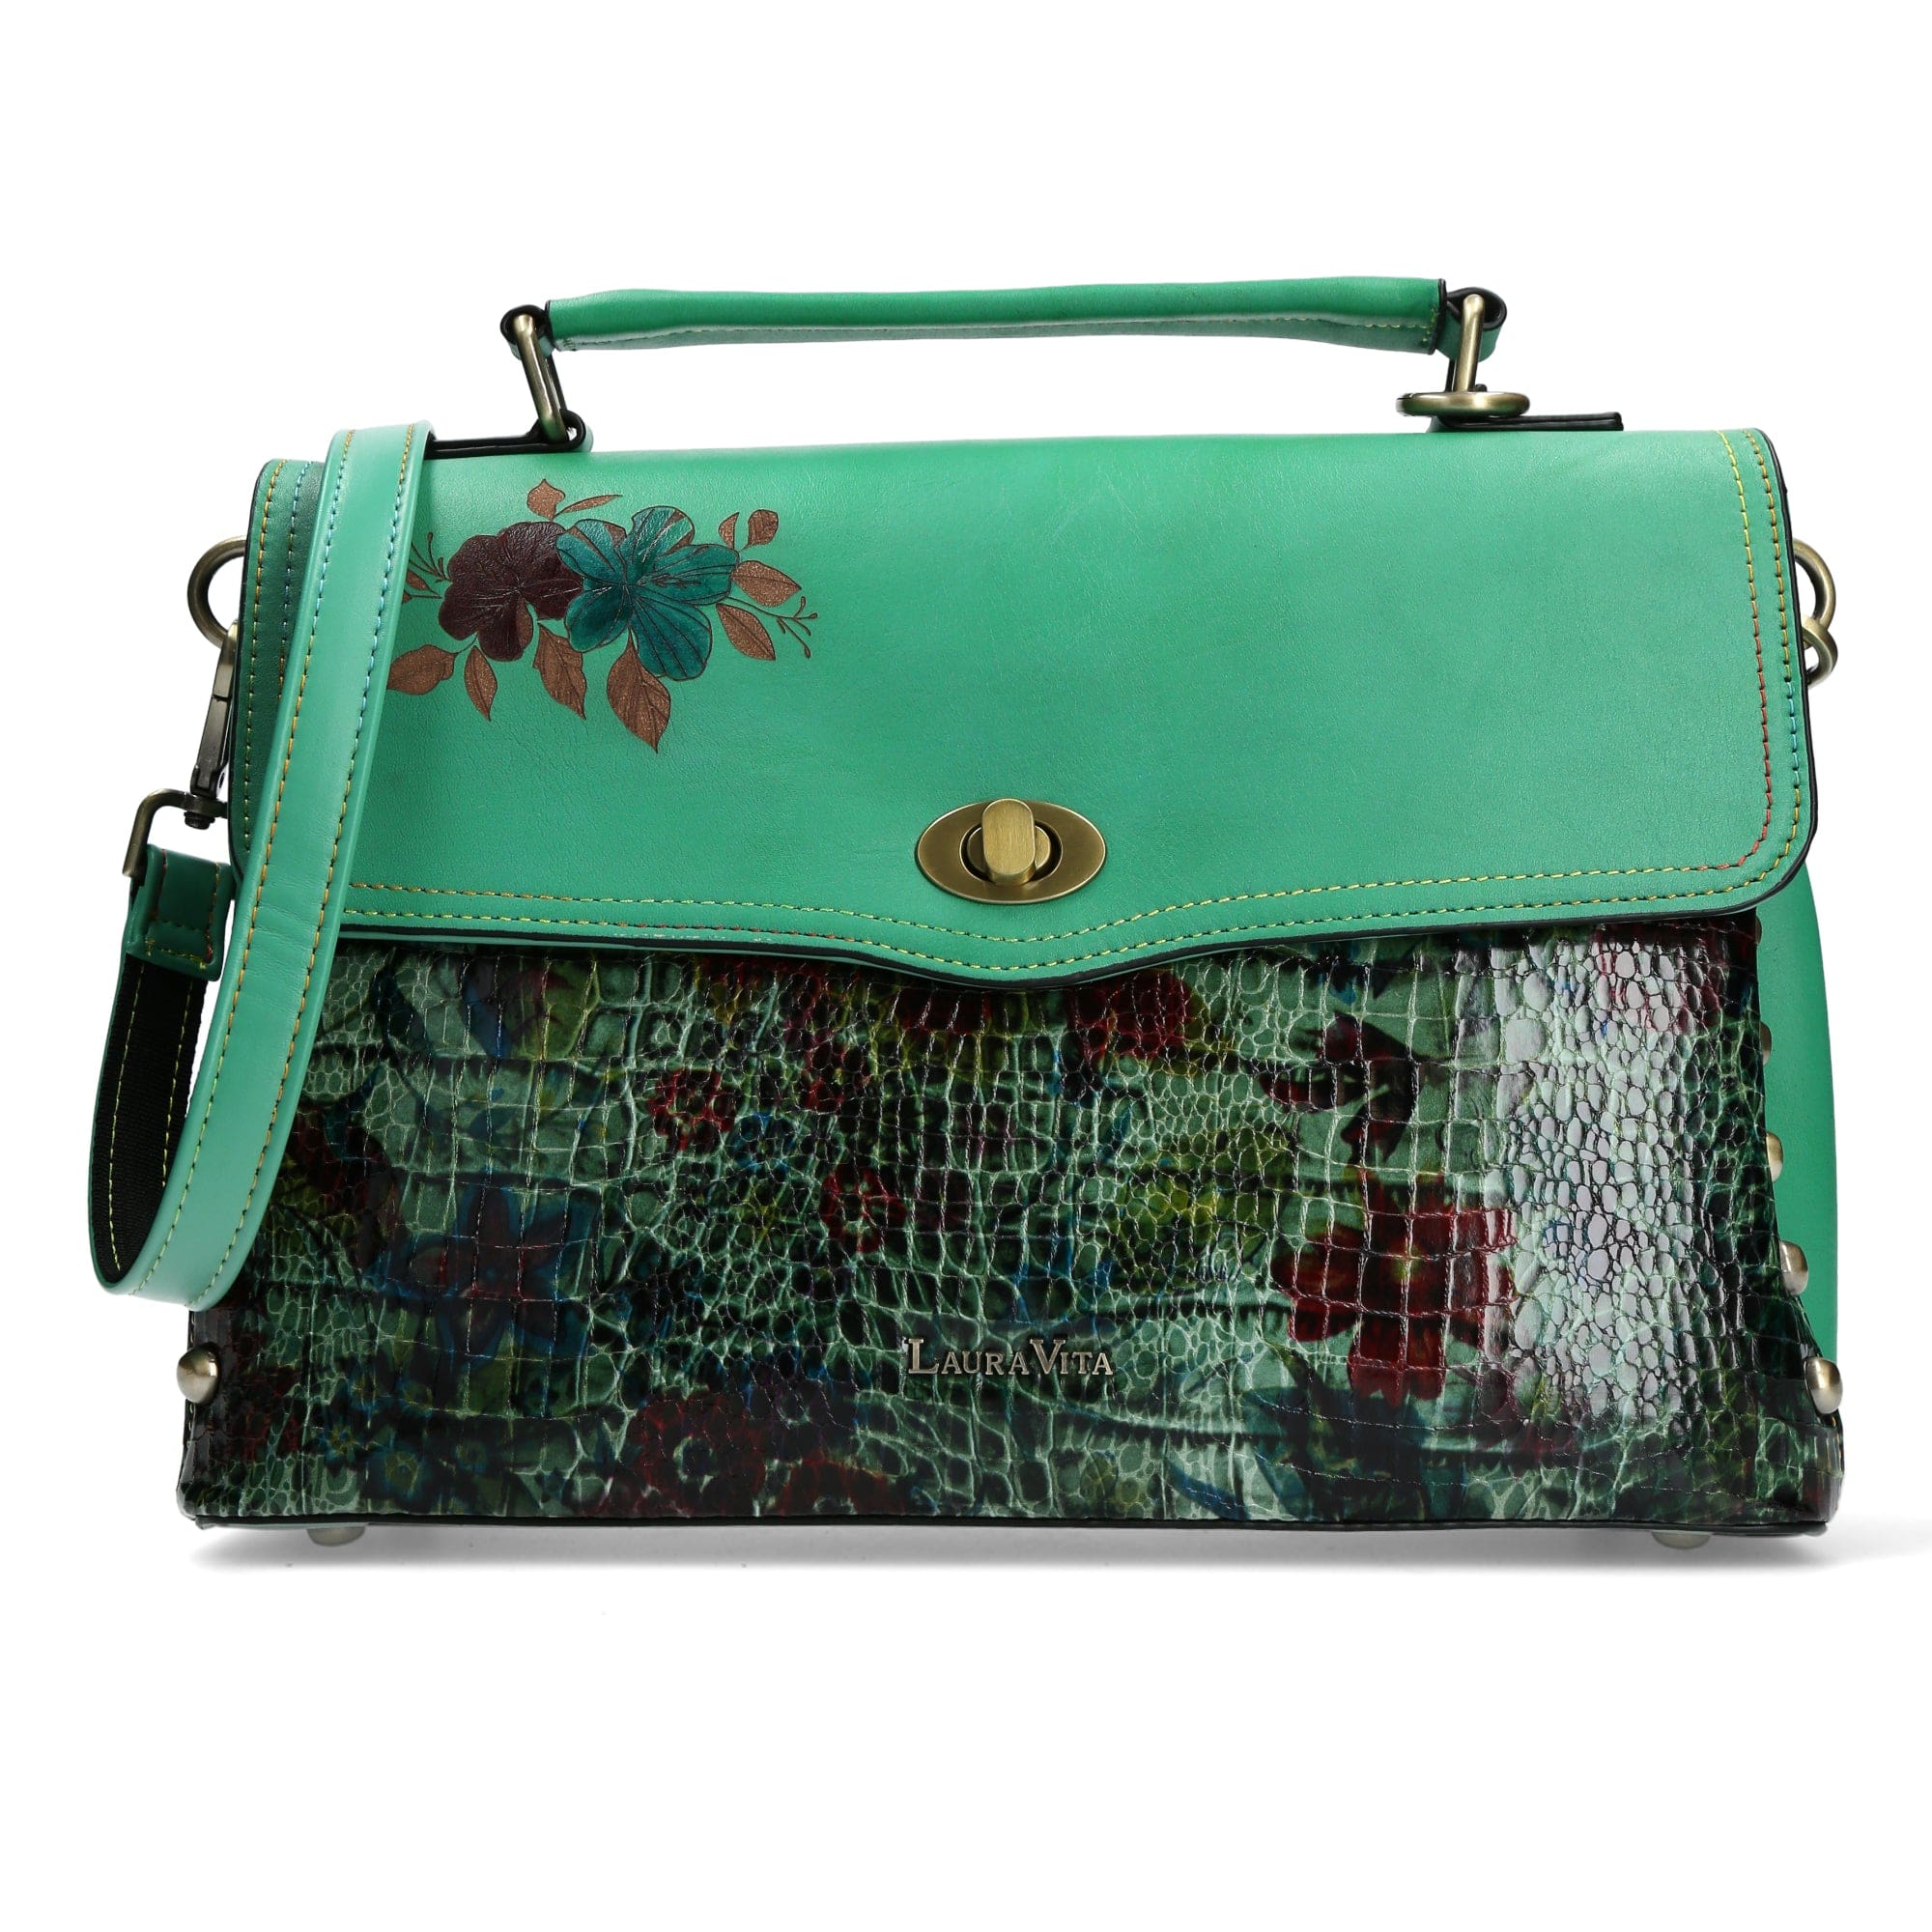 Leather Handbag 3382J - Green - Bag